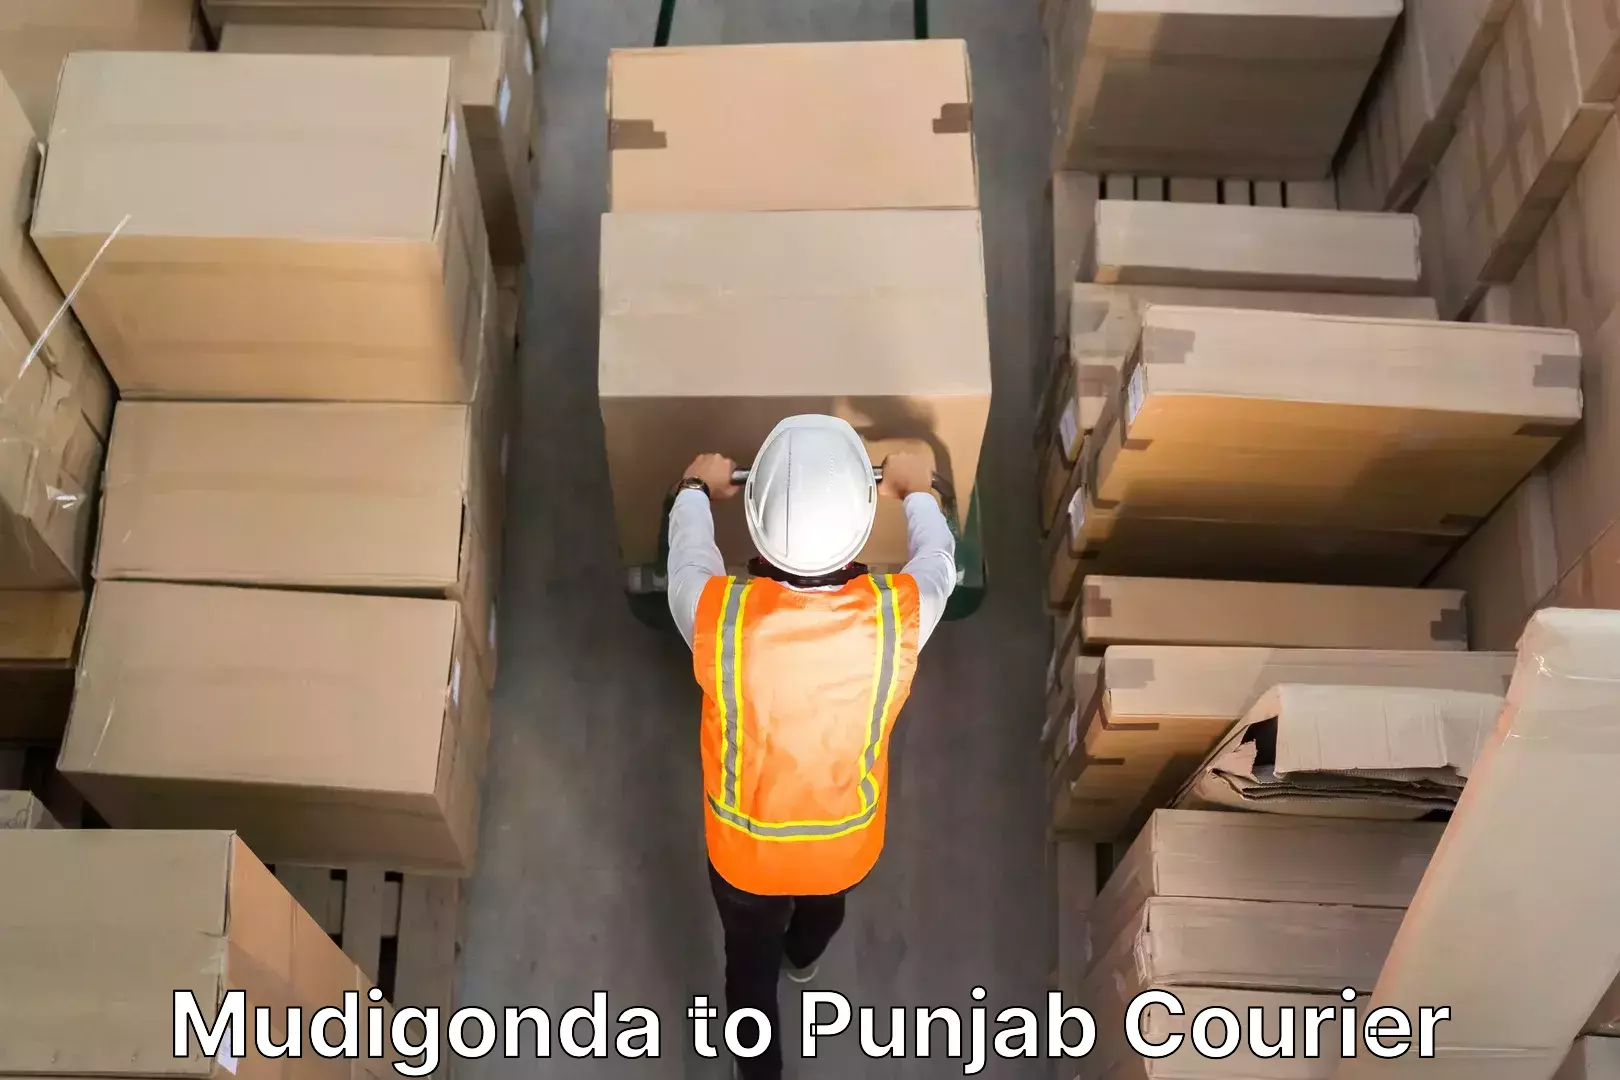 Stress-free furniture moving in Mudigonda to Punjab